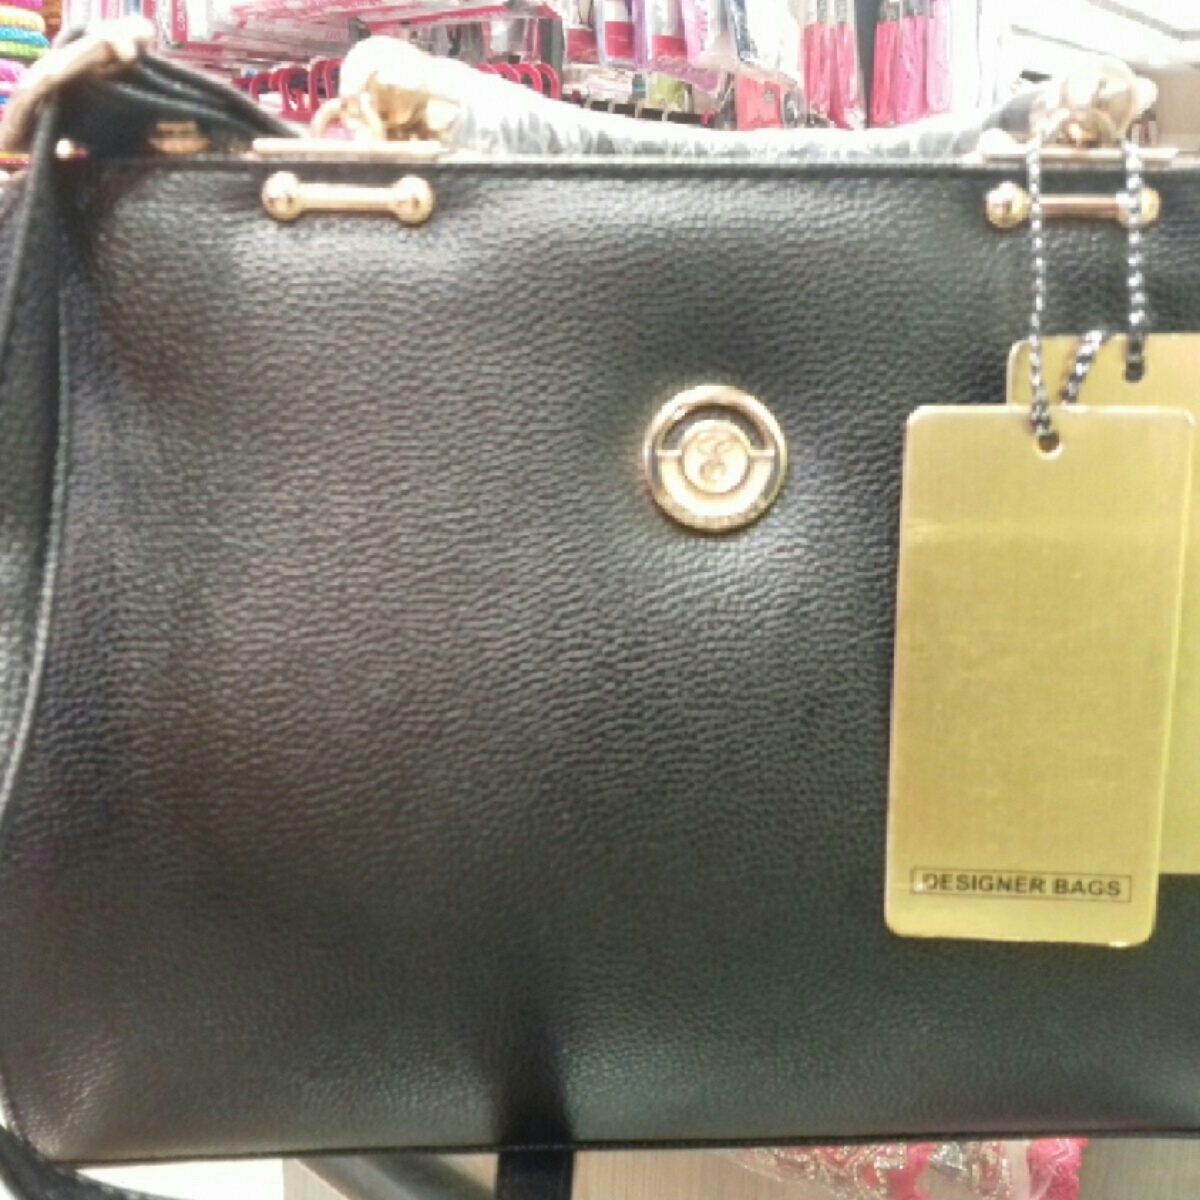 Black colour handbag Elegance brand for women